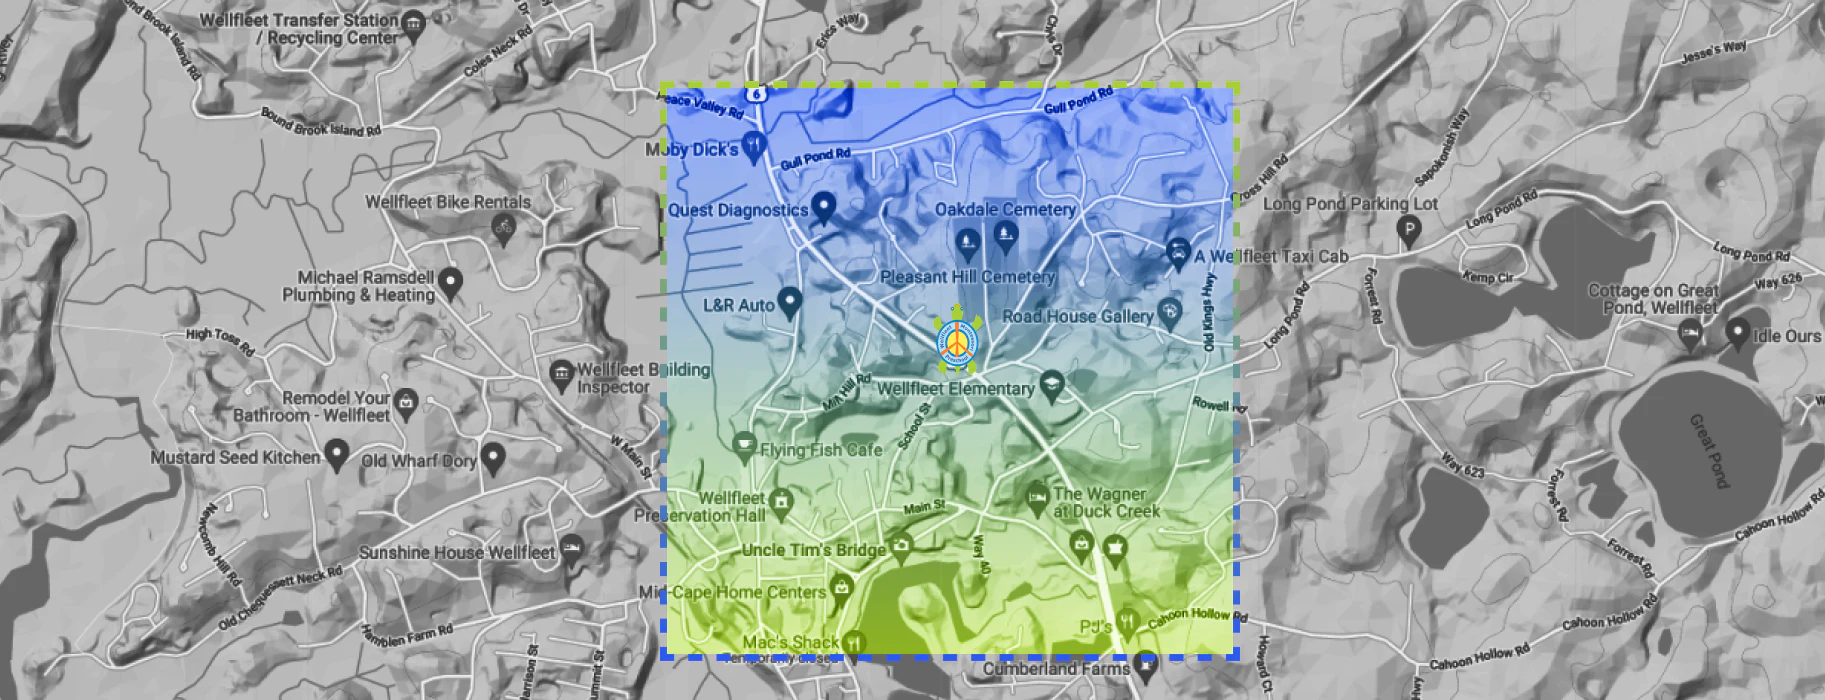 MAP 2